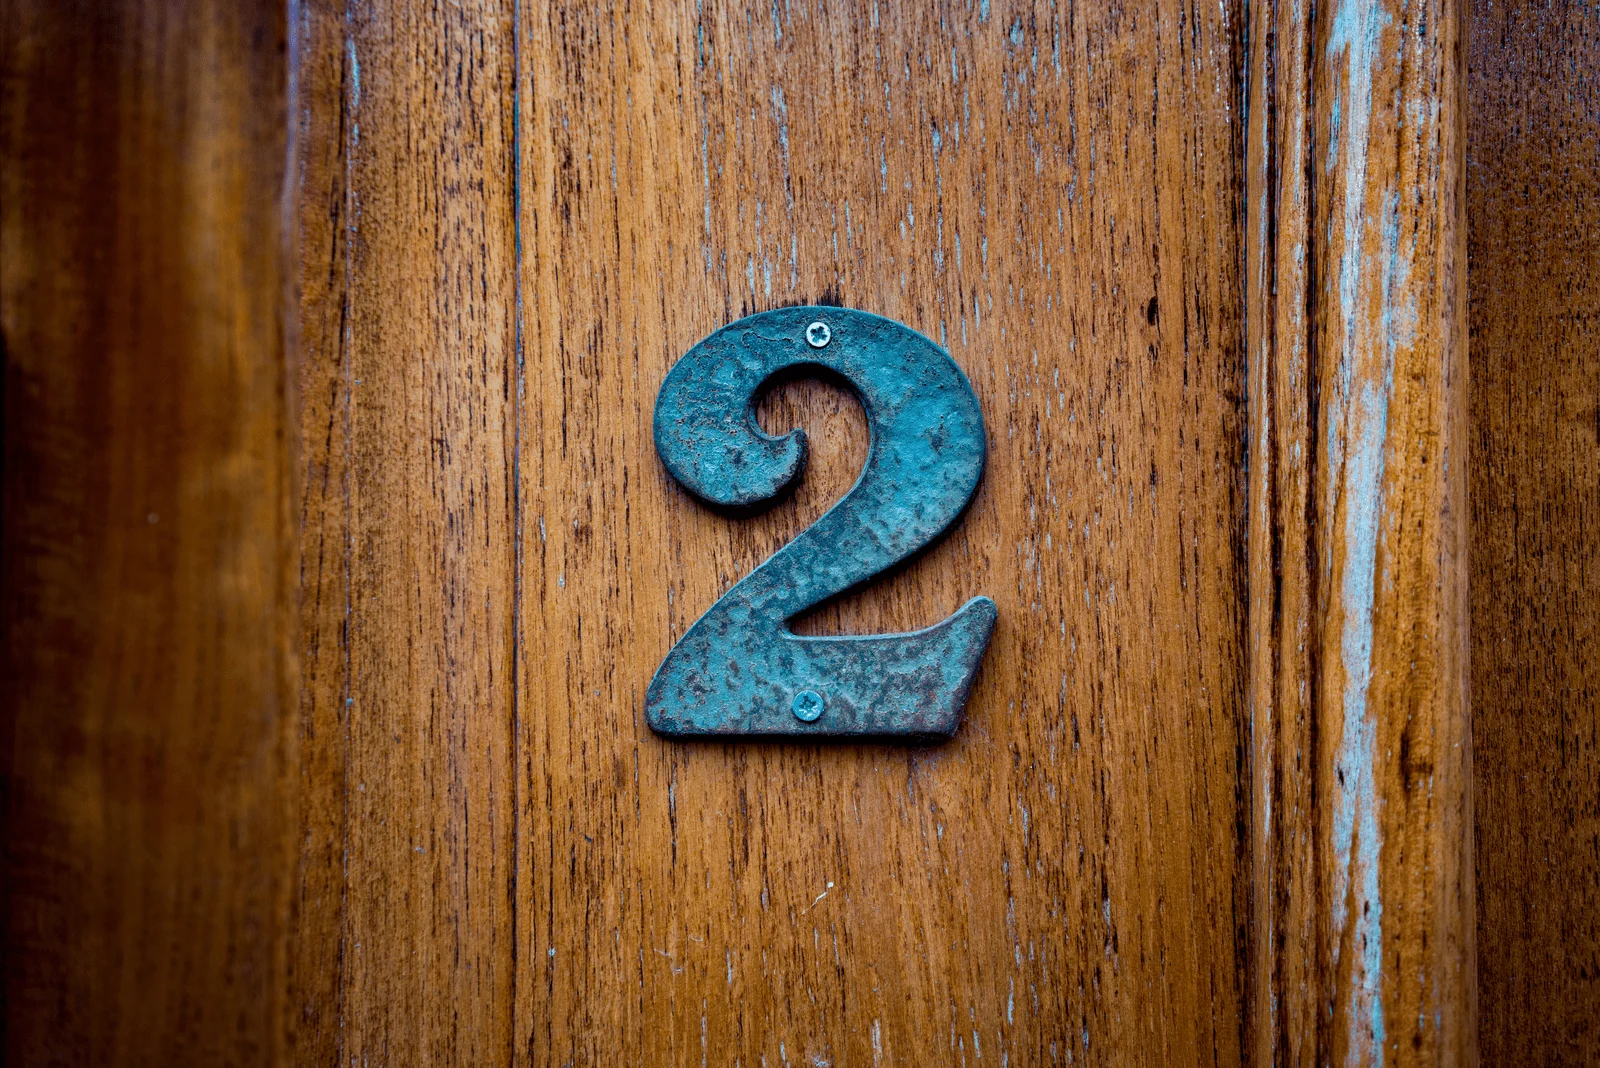 number 2 on the door